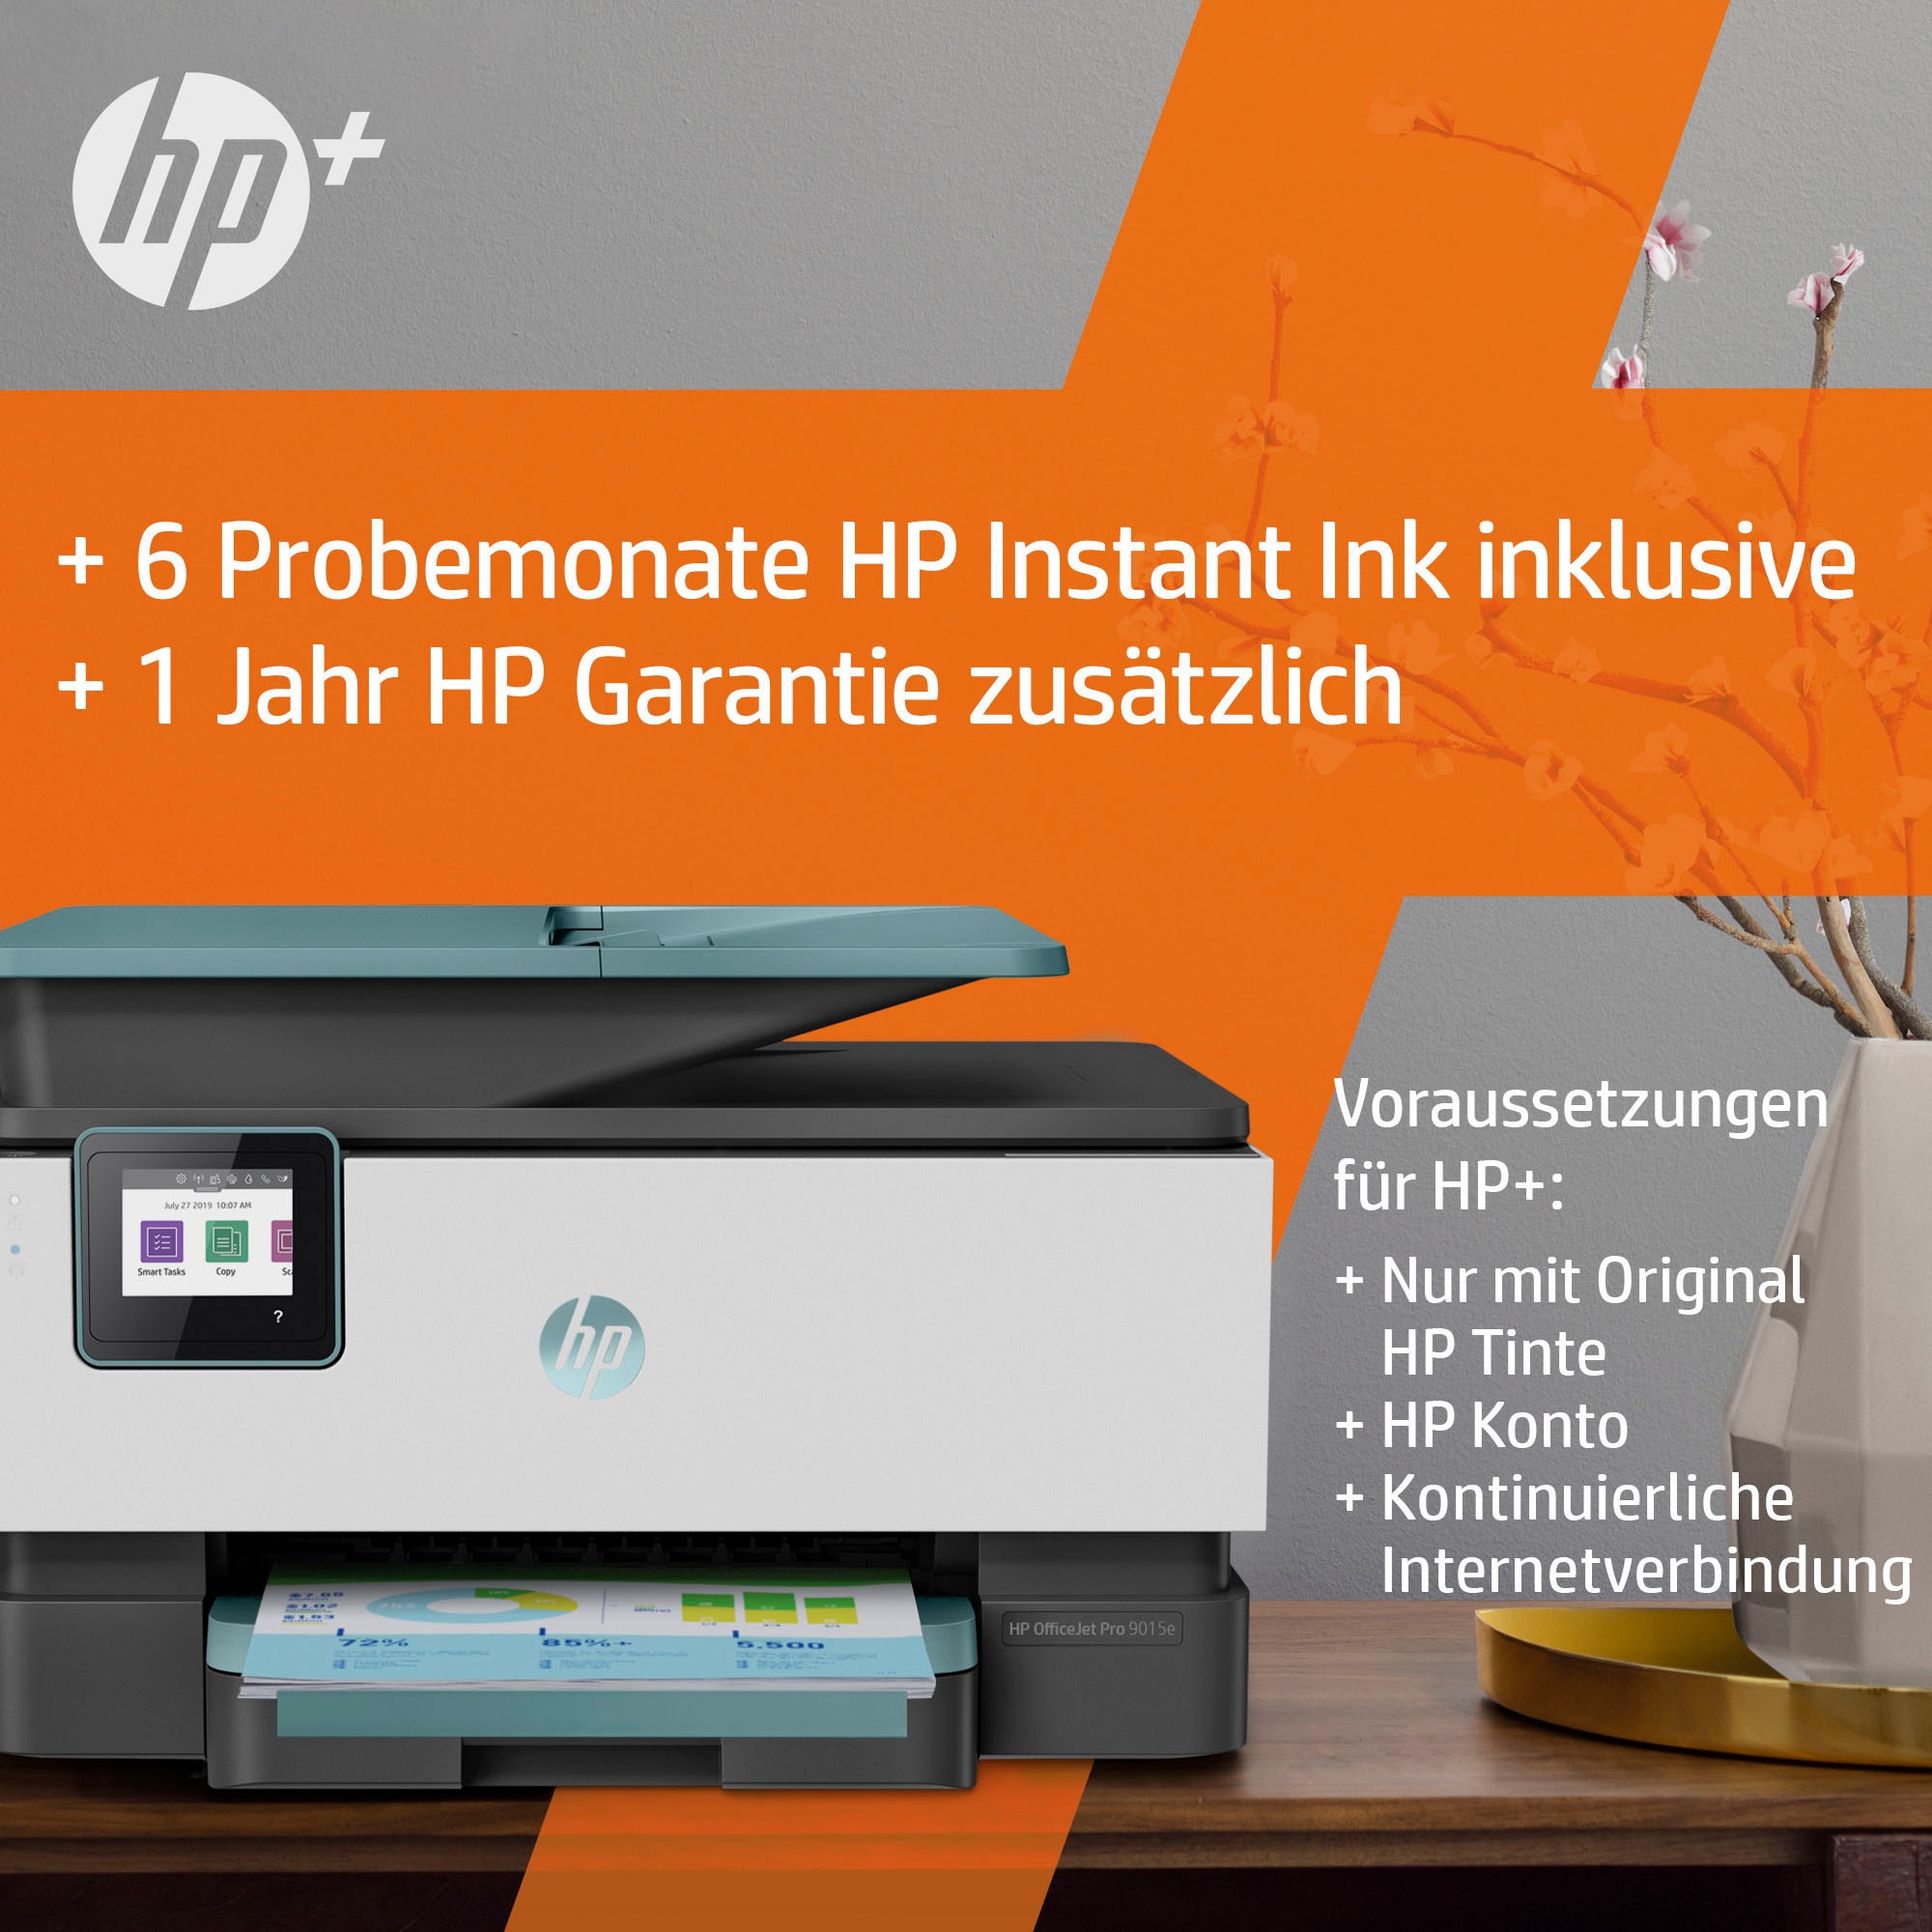 OTTO kompatibel Instant Multifunktionsdrucker All-in-One«, Ink 9015e »OfficeJet Pro bei bestellen HP+ HP